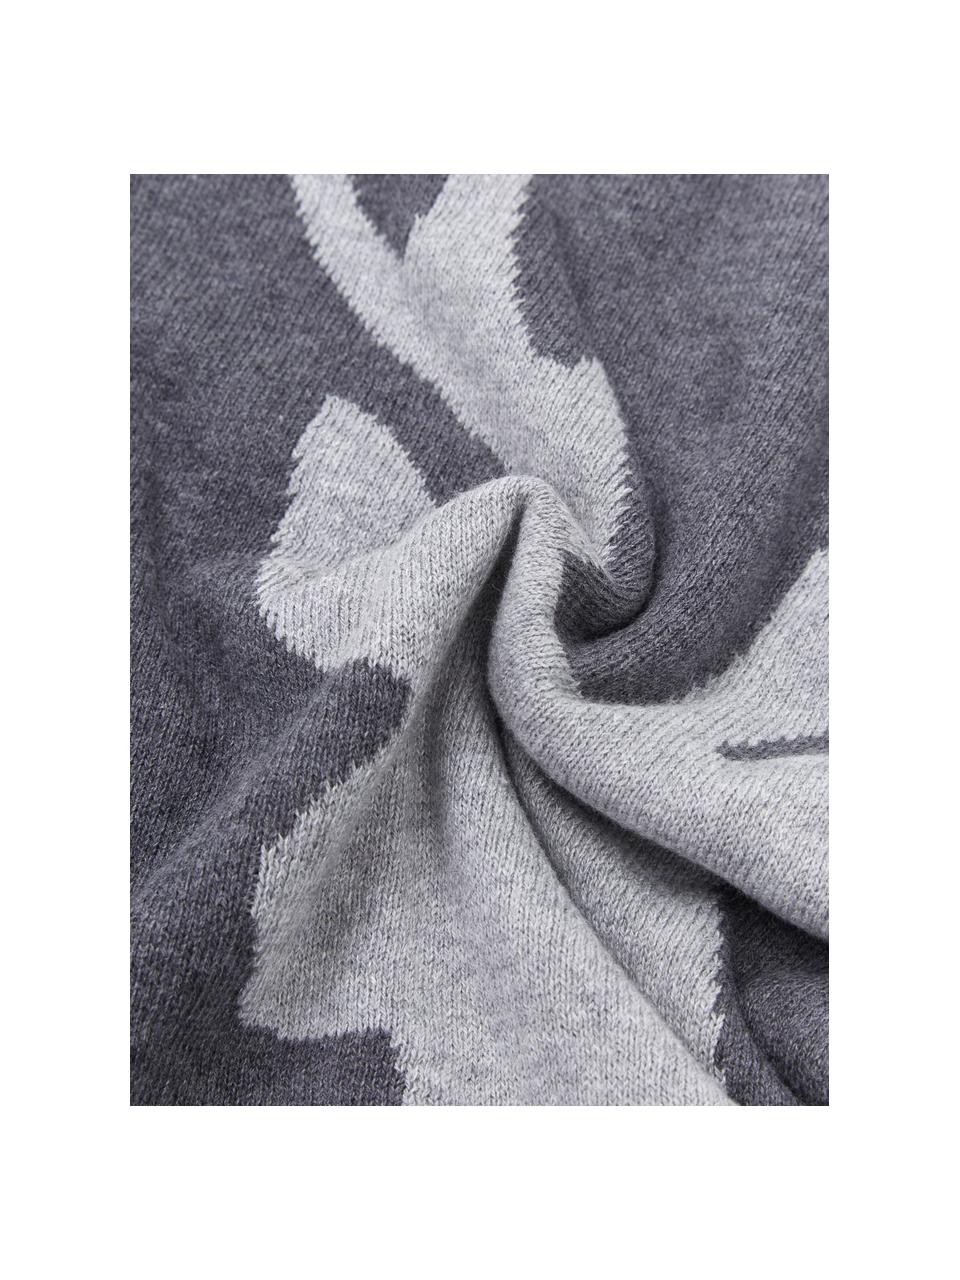 Federa arredo fatta a maglia con motivo cervo Antler, 100% cotone, Grigio scuro, grigio chiaro, Larg. 40 x Lung. 40 cm